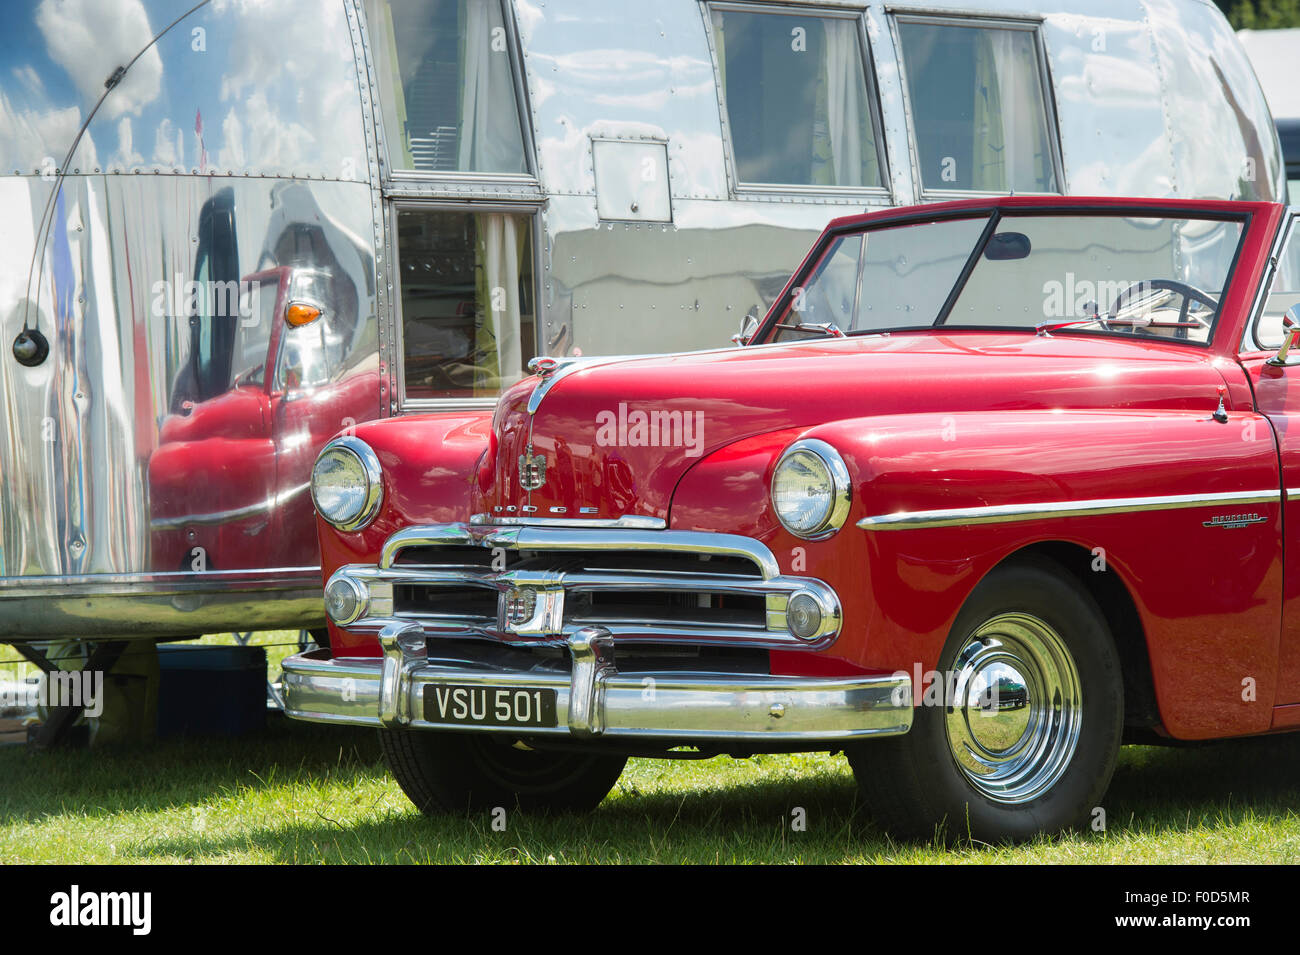 Dodge wayfarer voiture américaine reflète dans une caravane Airstream vintage retro à un festival. UK Banque D'Images